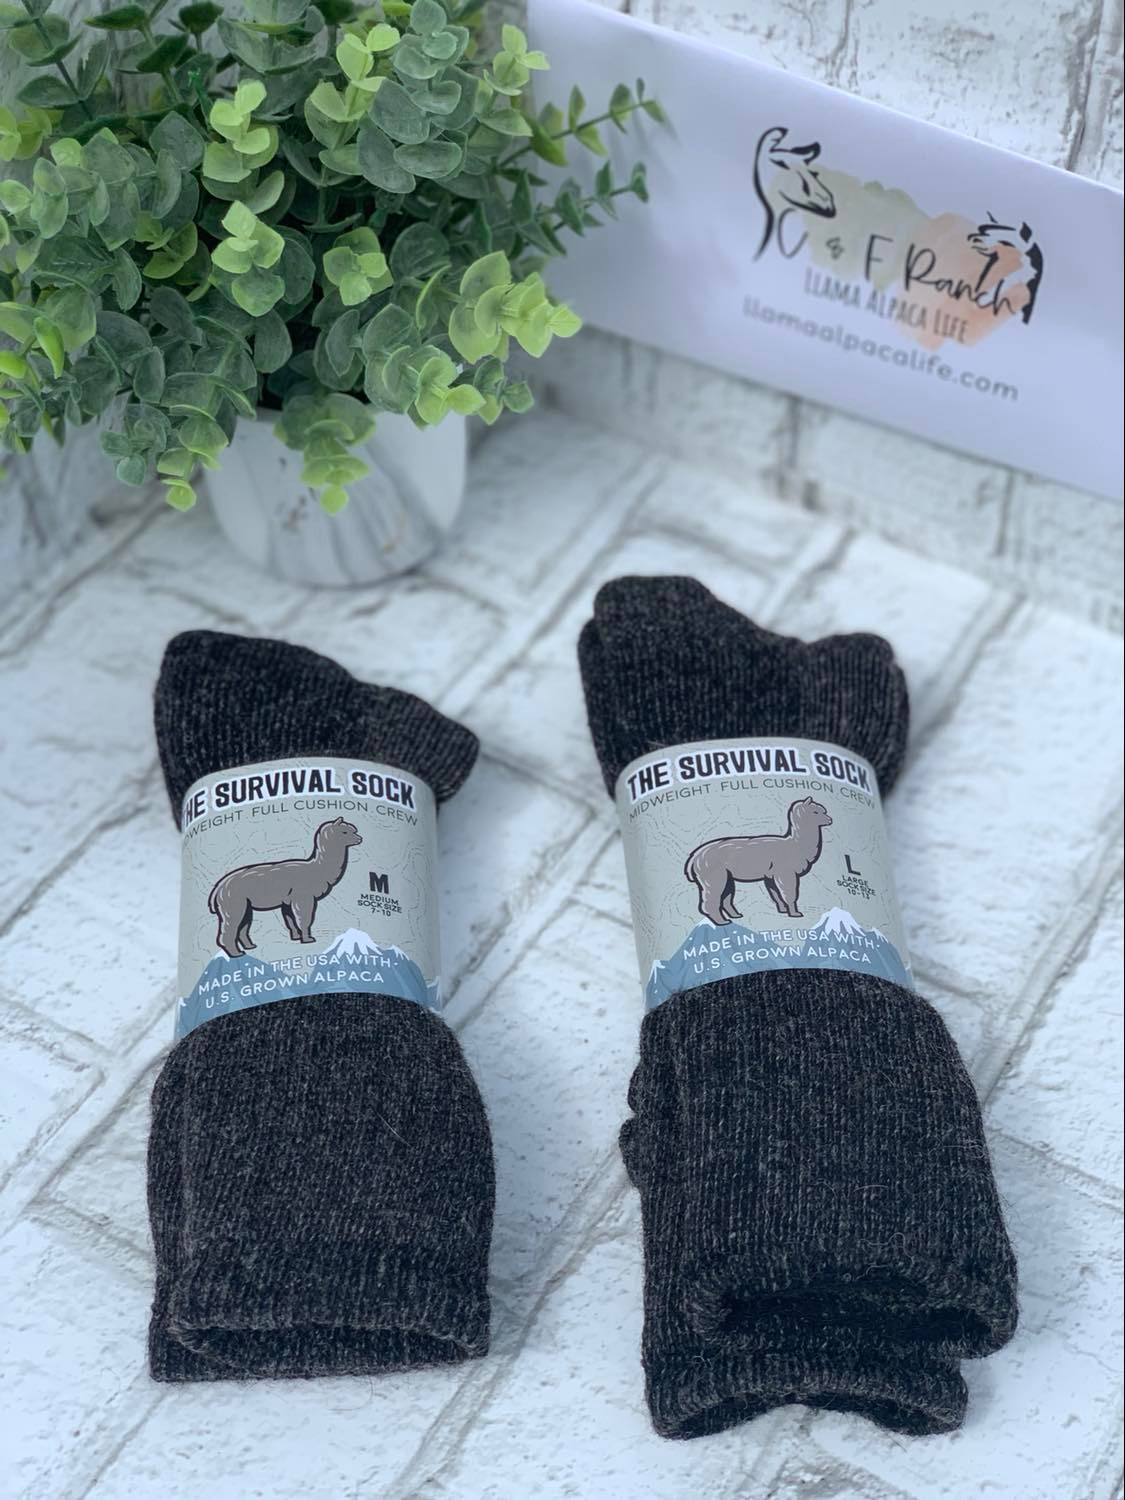 Alpaca Survival Sock